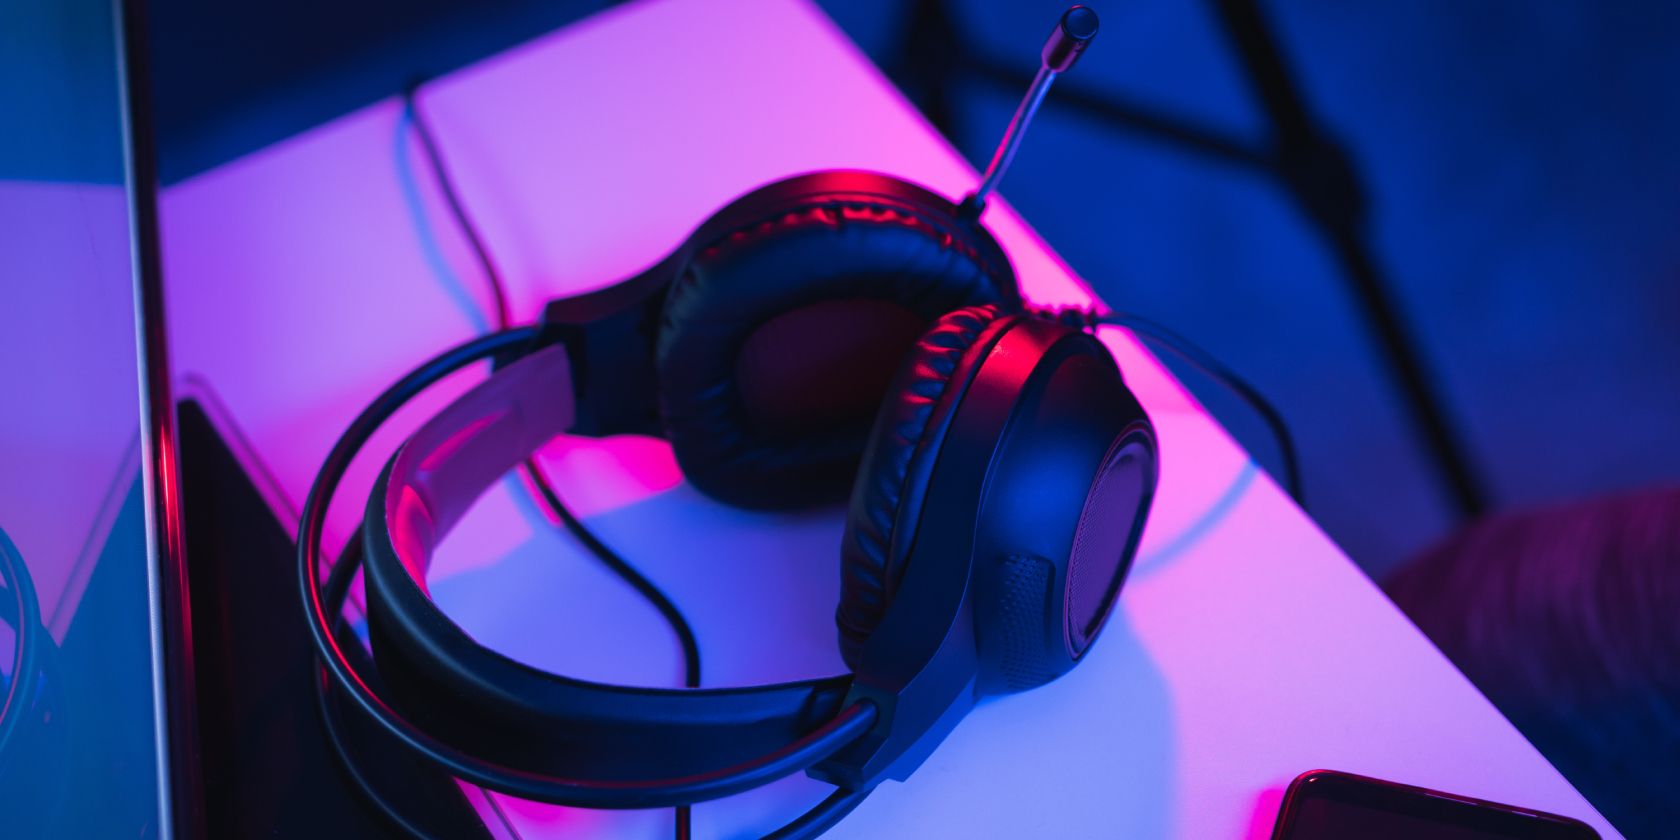 Gaming headphones resting on tabletop